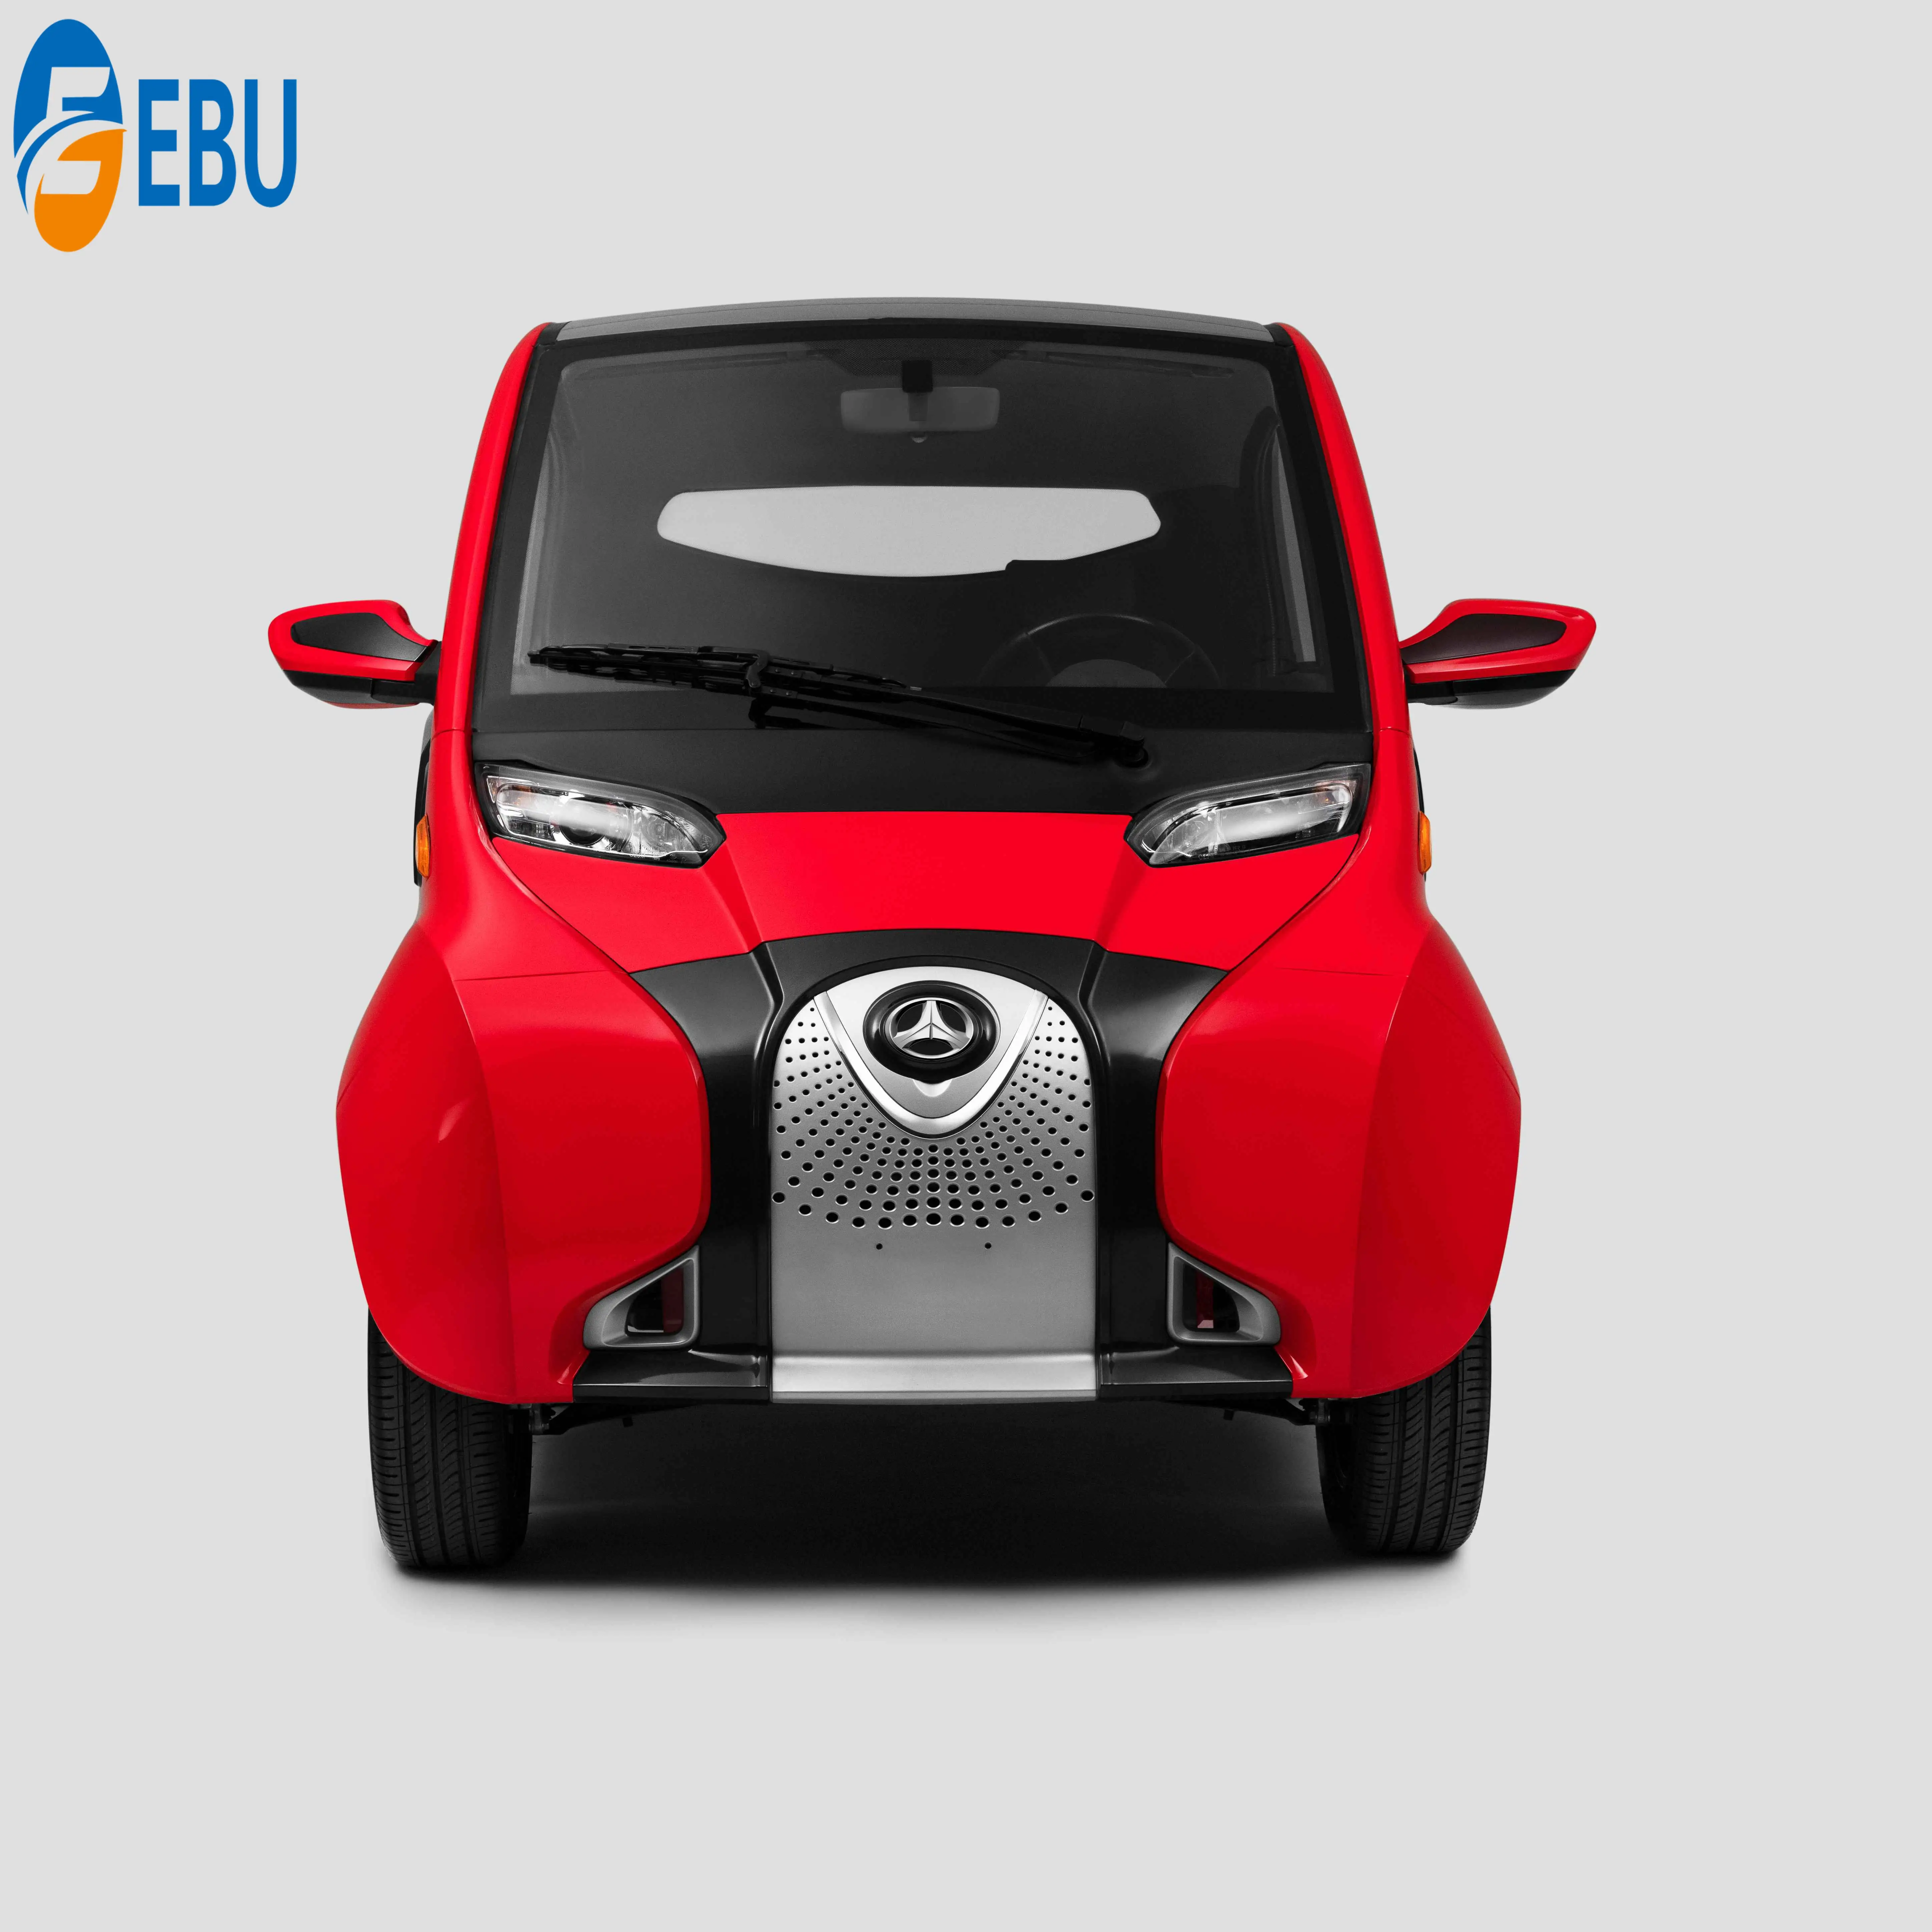 Voiture électrique de luxe pour adultes, voiture à grande vitesse, 70 km/h par h, fabriqué en chine, bon marché, nouvelle collection 2020